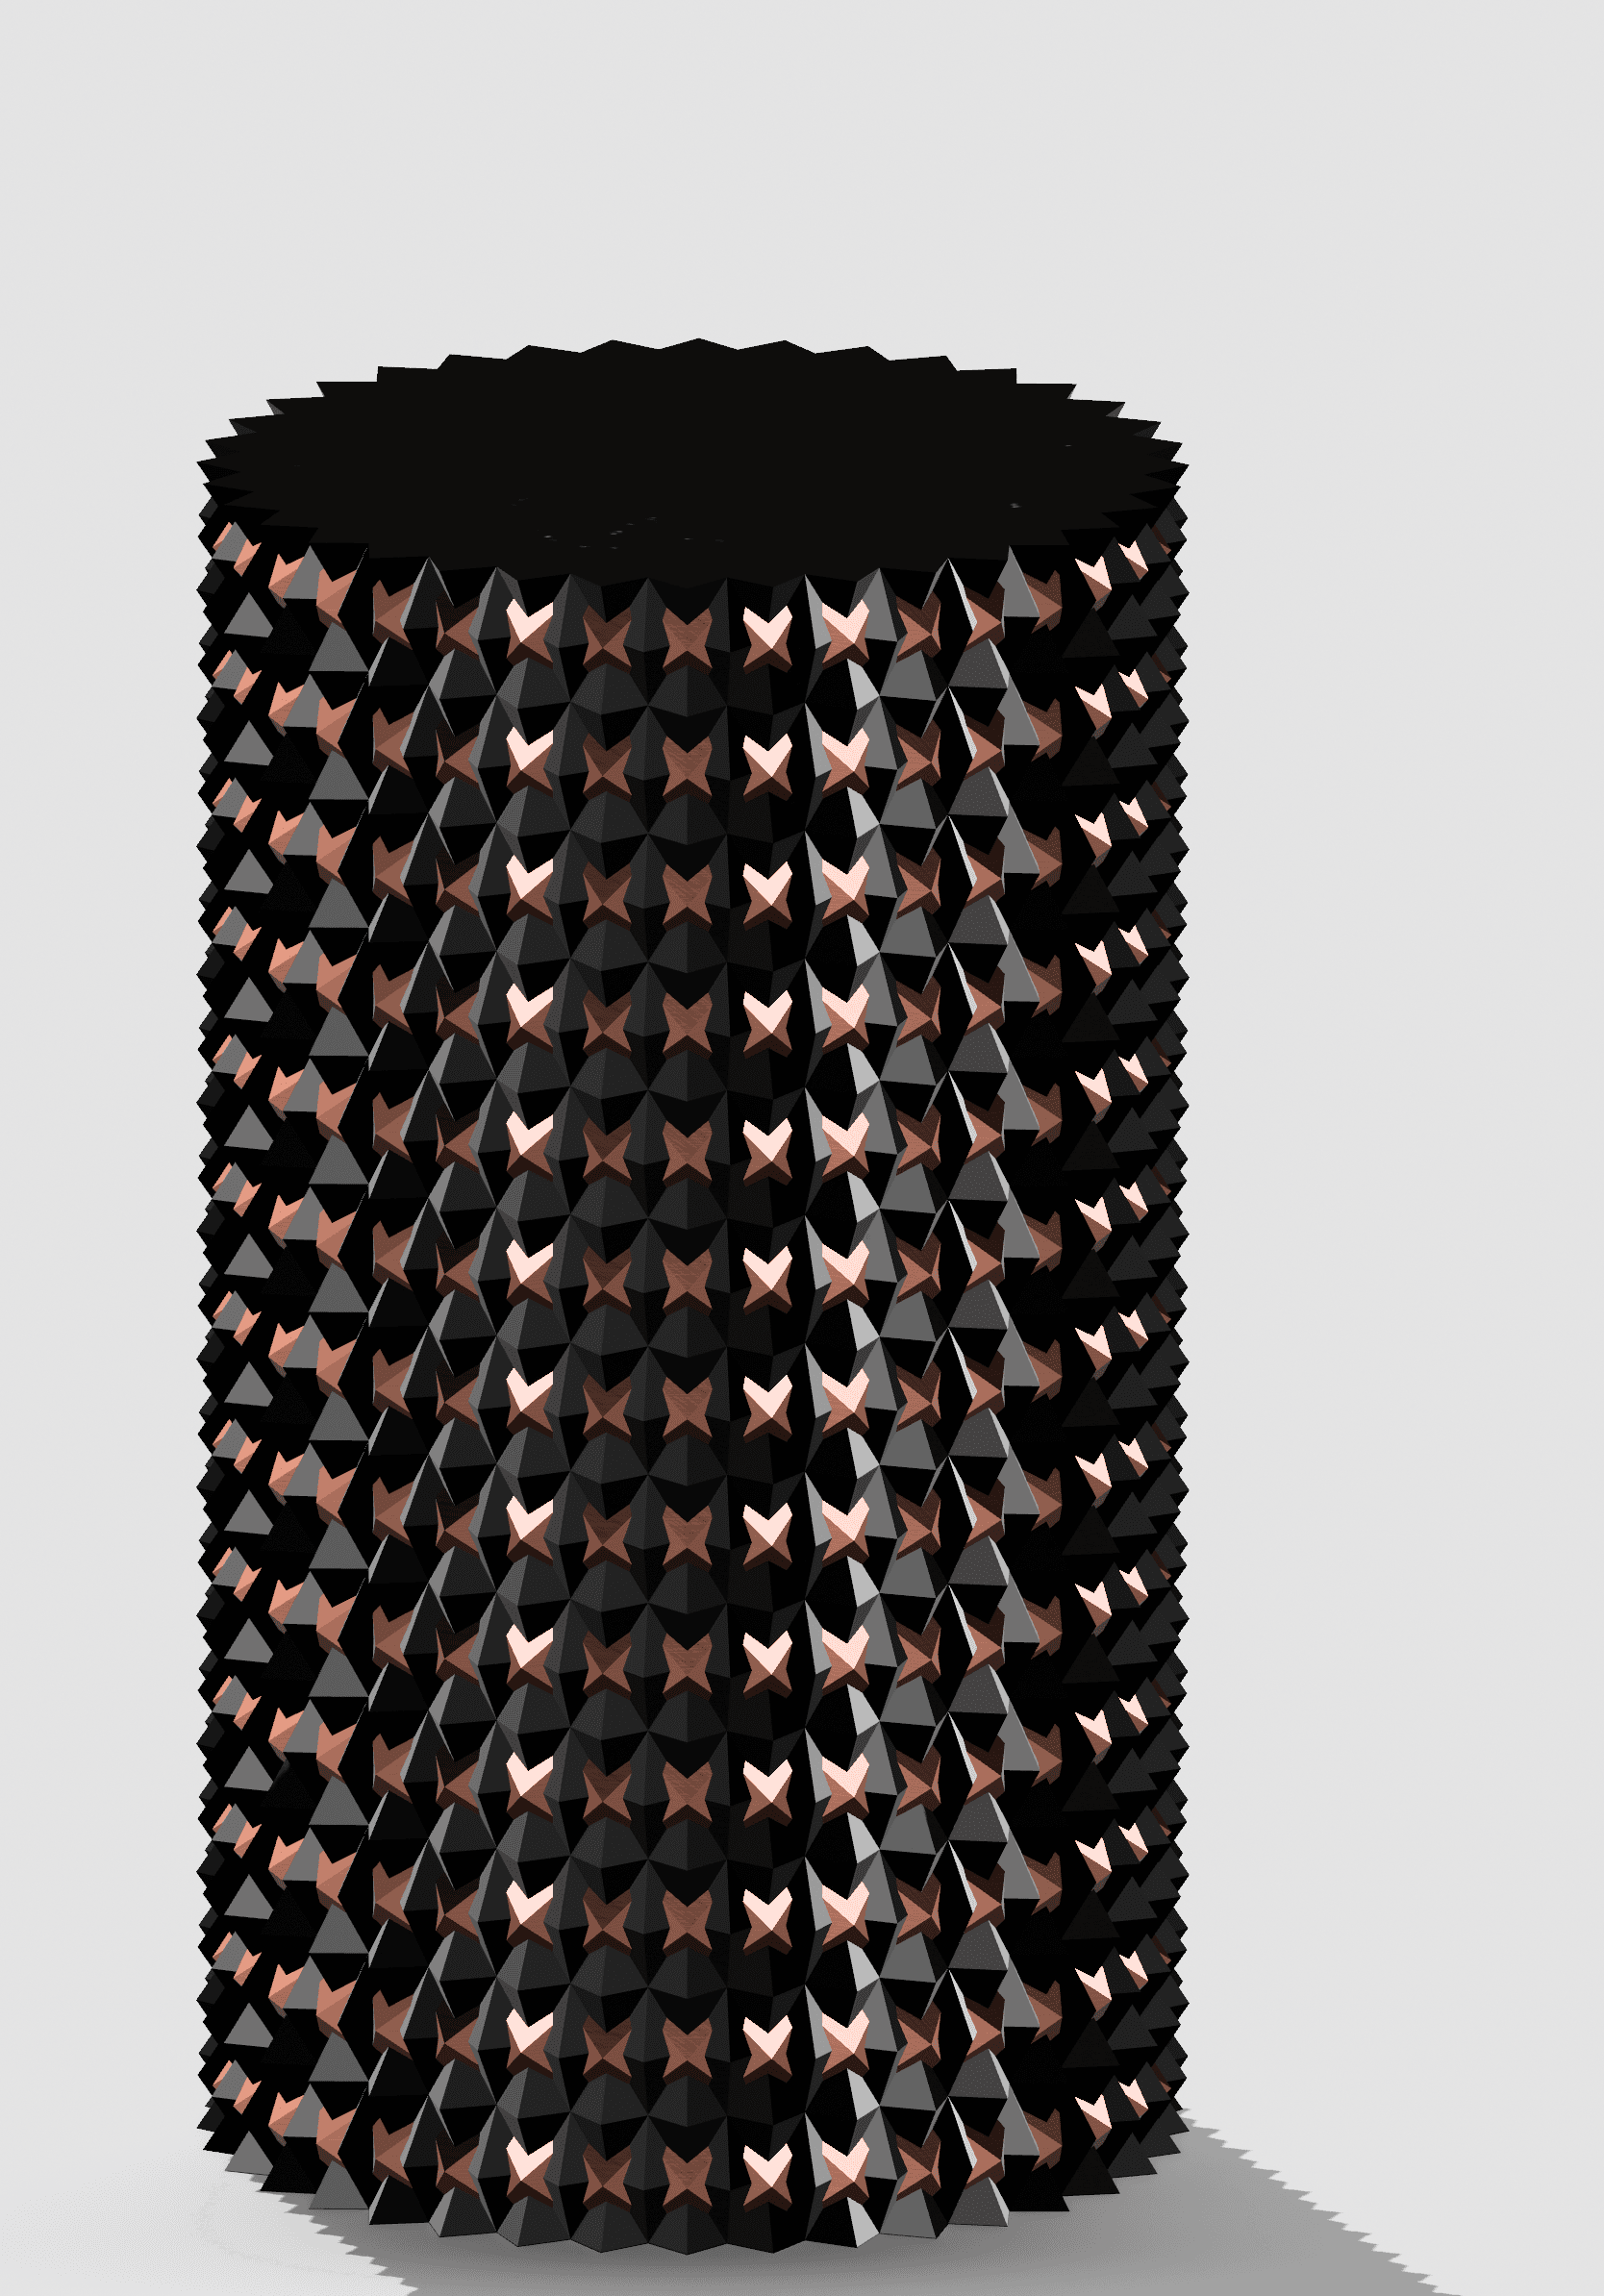 studded vase.stl 3d model